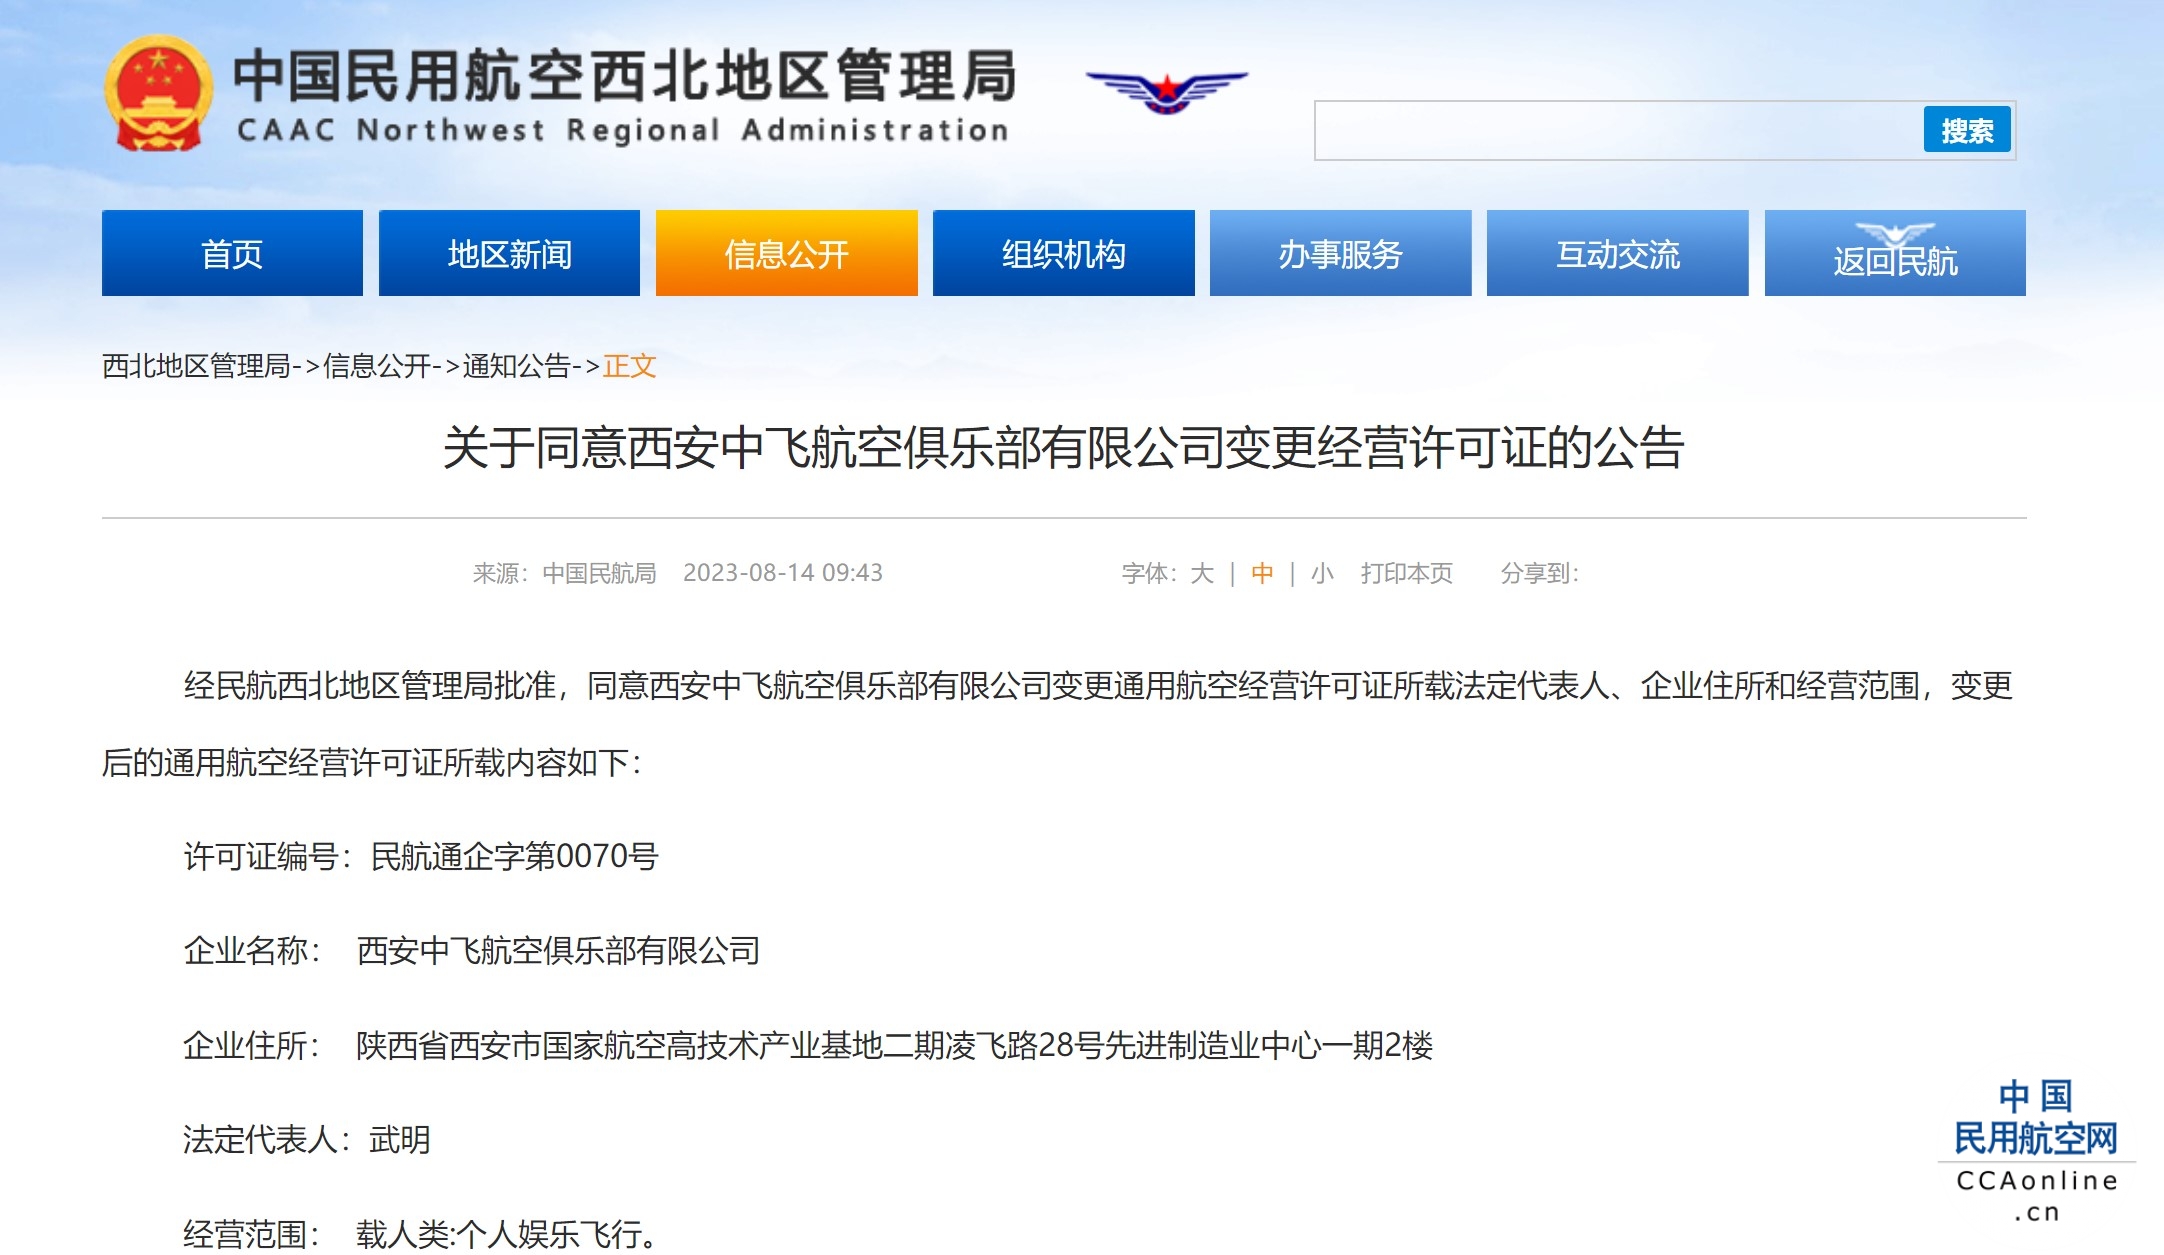 西安中飞航空俱乐部有限公司变更经营许可证